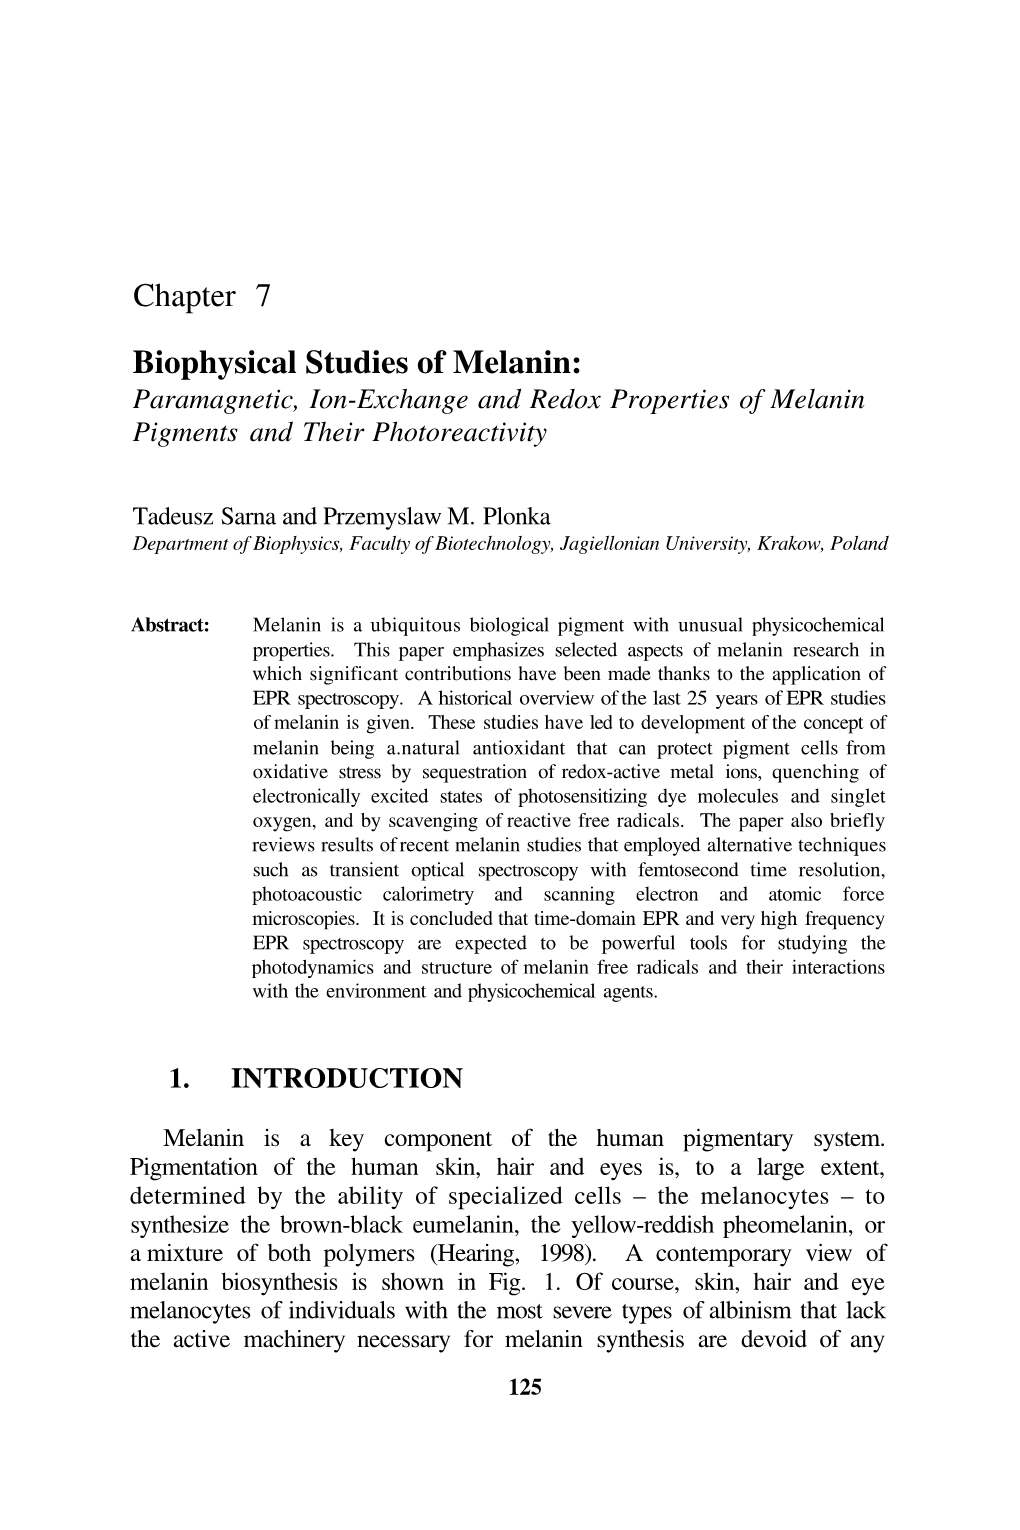 Chapter 7 Biophysical Studies of Melanin